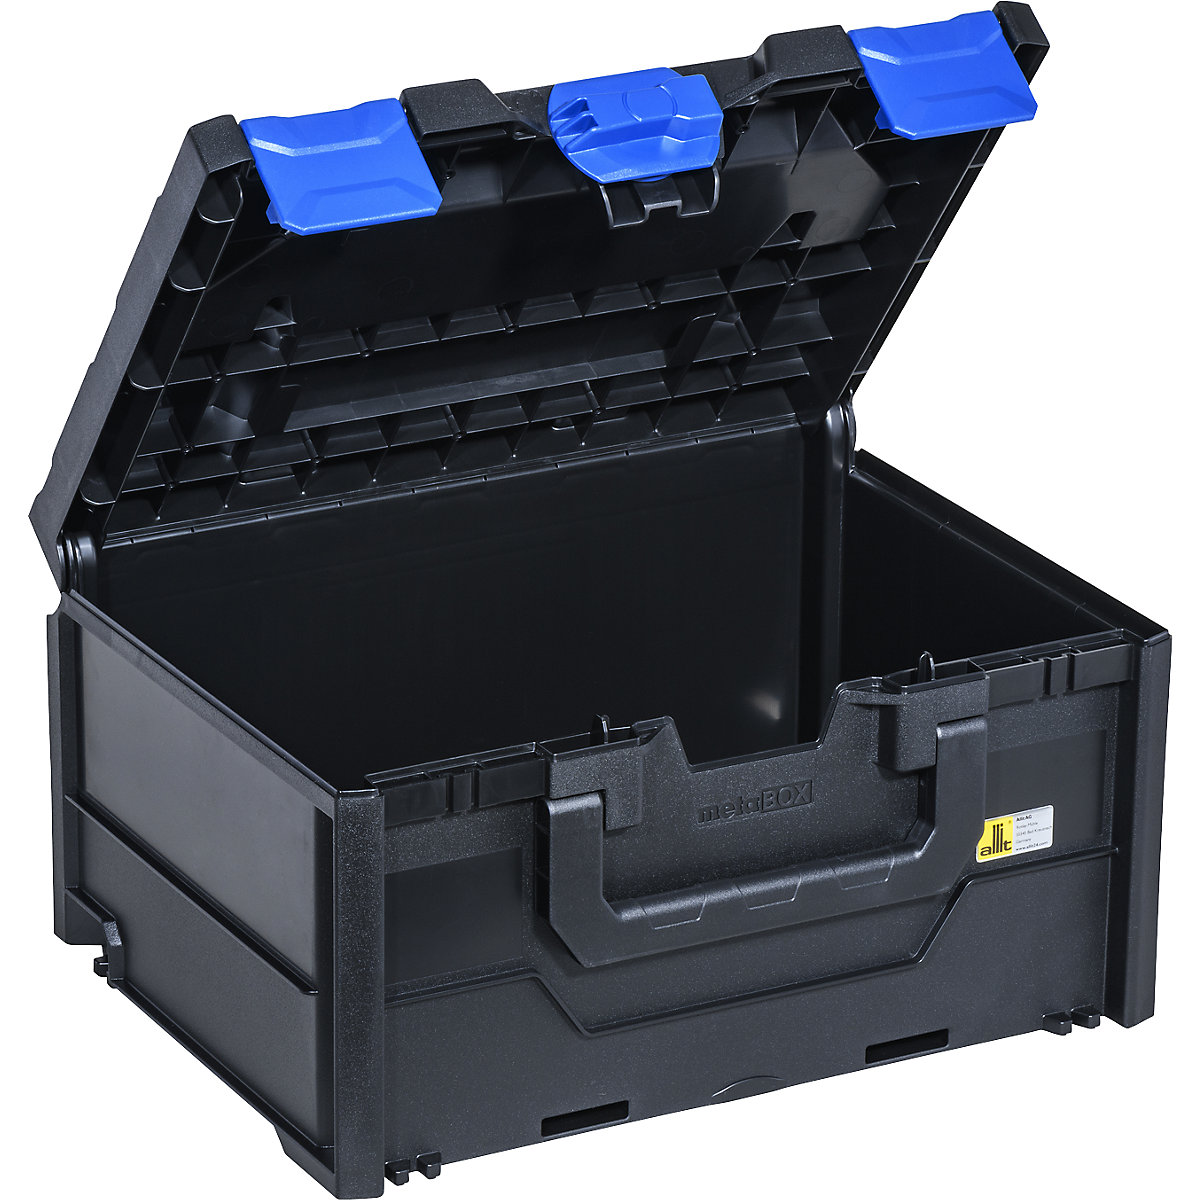 Transport- und Aufbewahrungsbox, schwarz/blau, ABS, Außen-LxBxH 396 x 296 x 215 mm